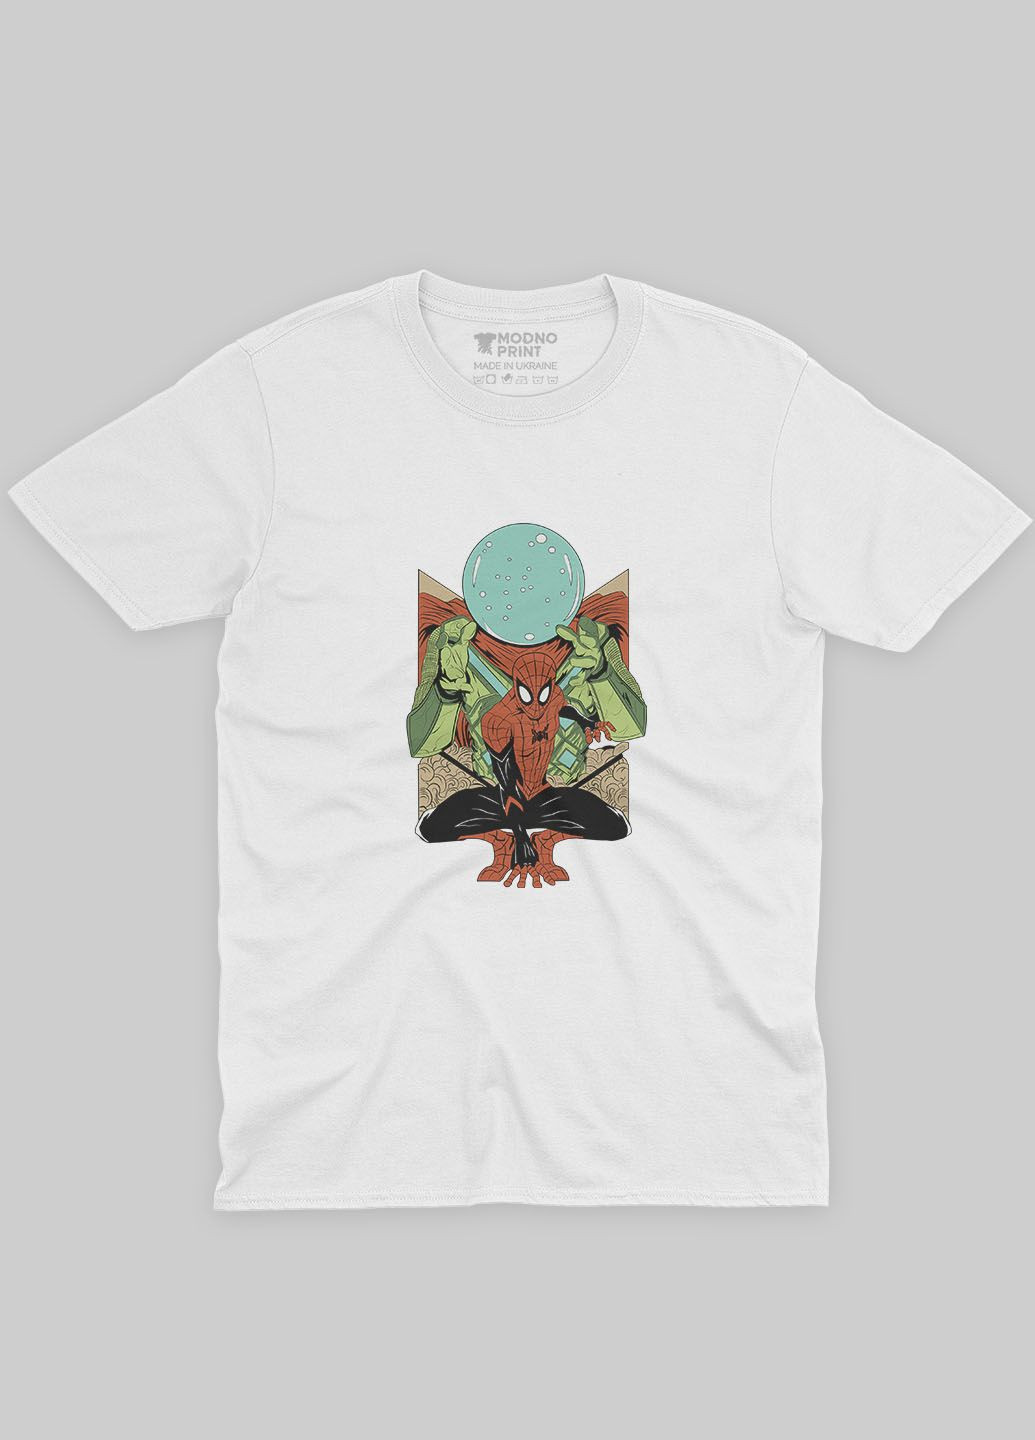 Белая демисезонная футболка для мальчика с принтом супергероя - человек-паук (ts001-1-whi-006-014-020-b) Modno